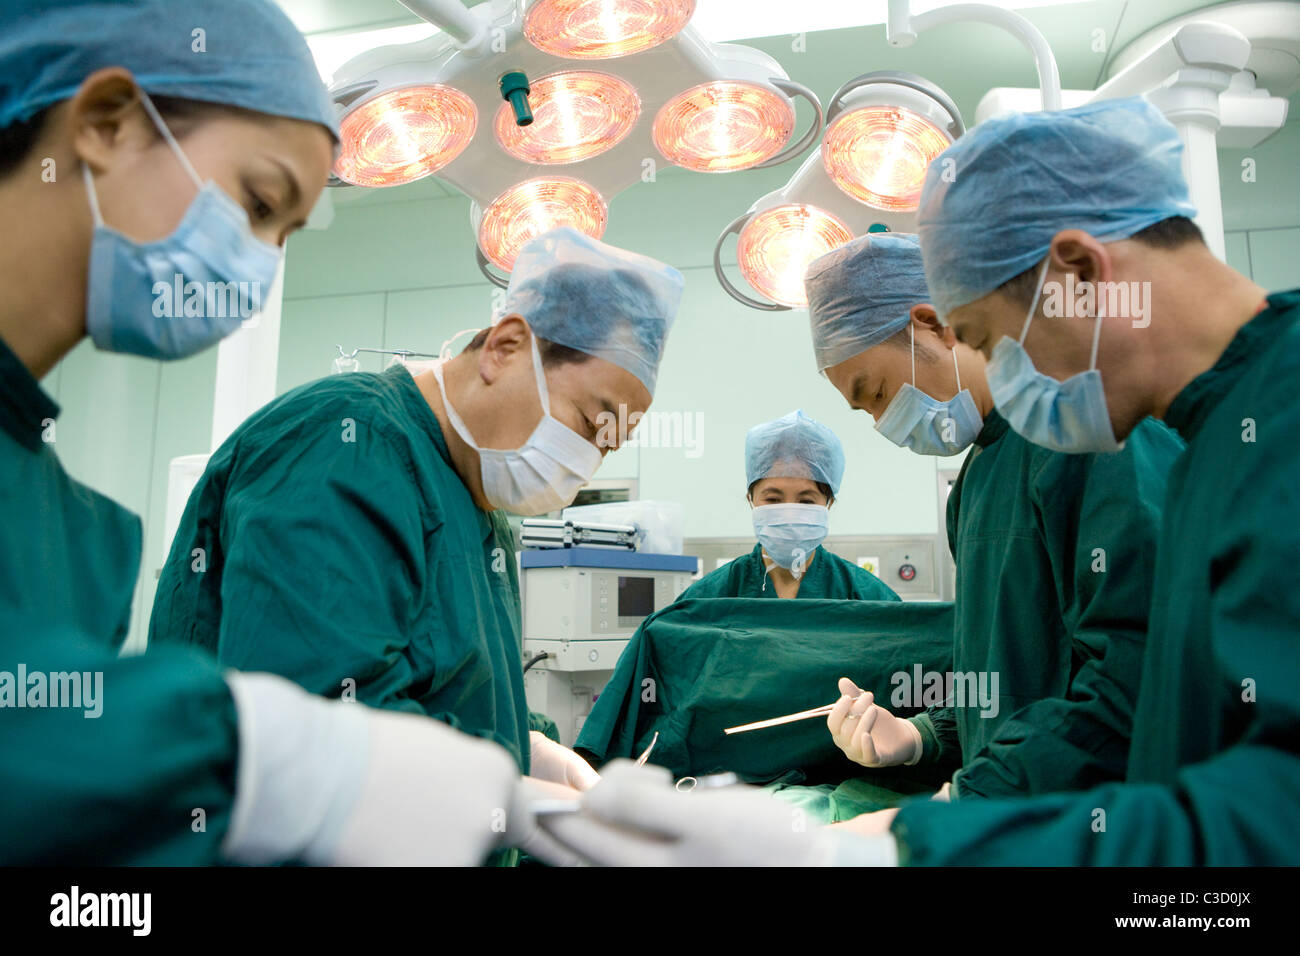 Équipe de chirurgiens travaillant dans une salle d'opération Banque D'Images